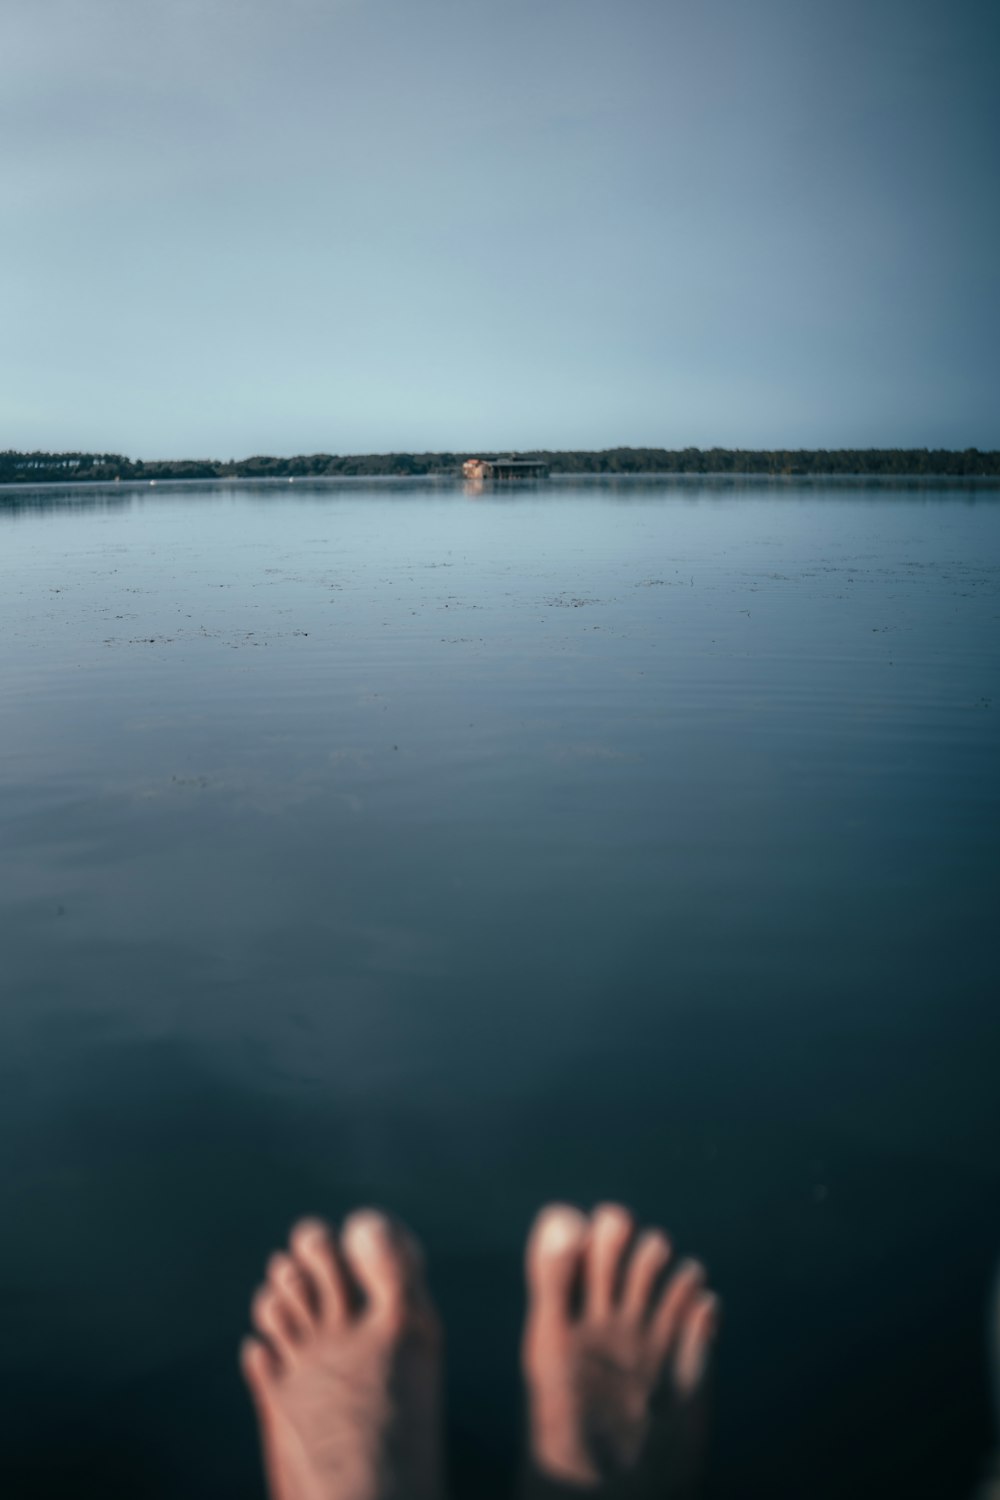 Die Füße einer Person im Wasser mit einem Haus in der Ferne